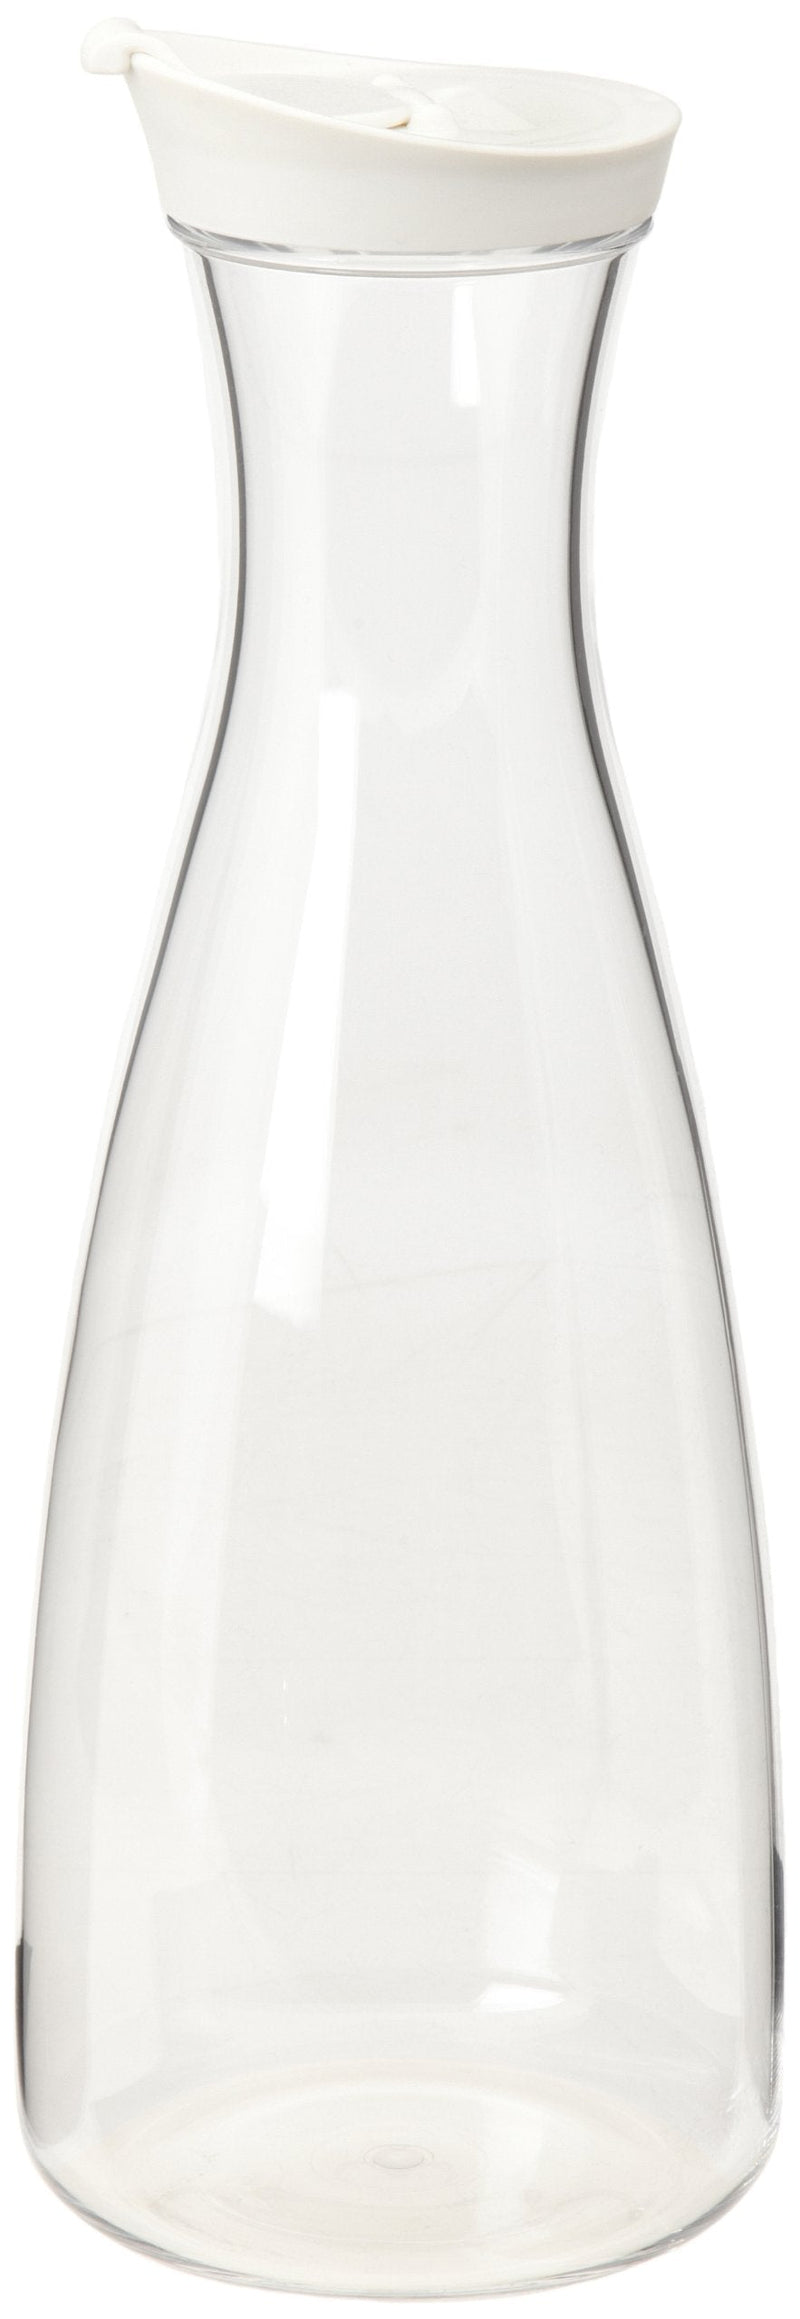 [Australia - AusPower] - Prodyne J-56-W Juice Jar, 56-Ounce, DAA White 56 oz. 